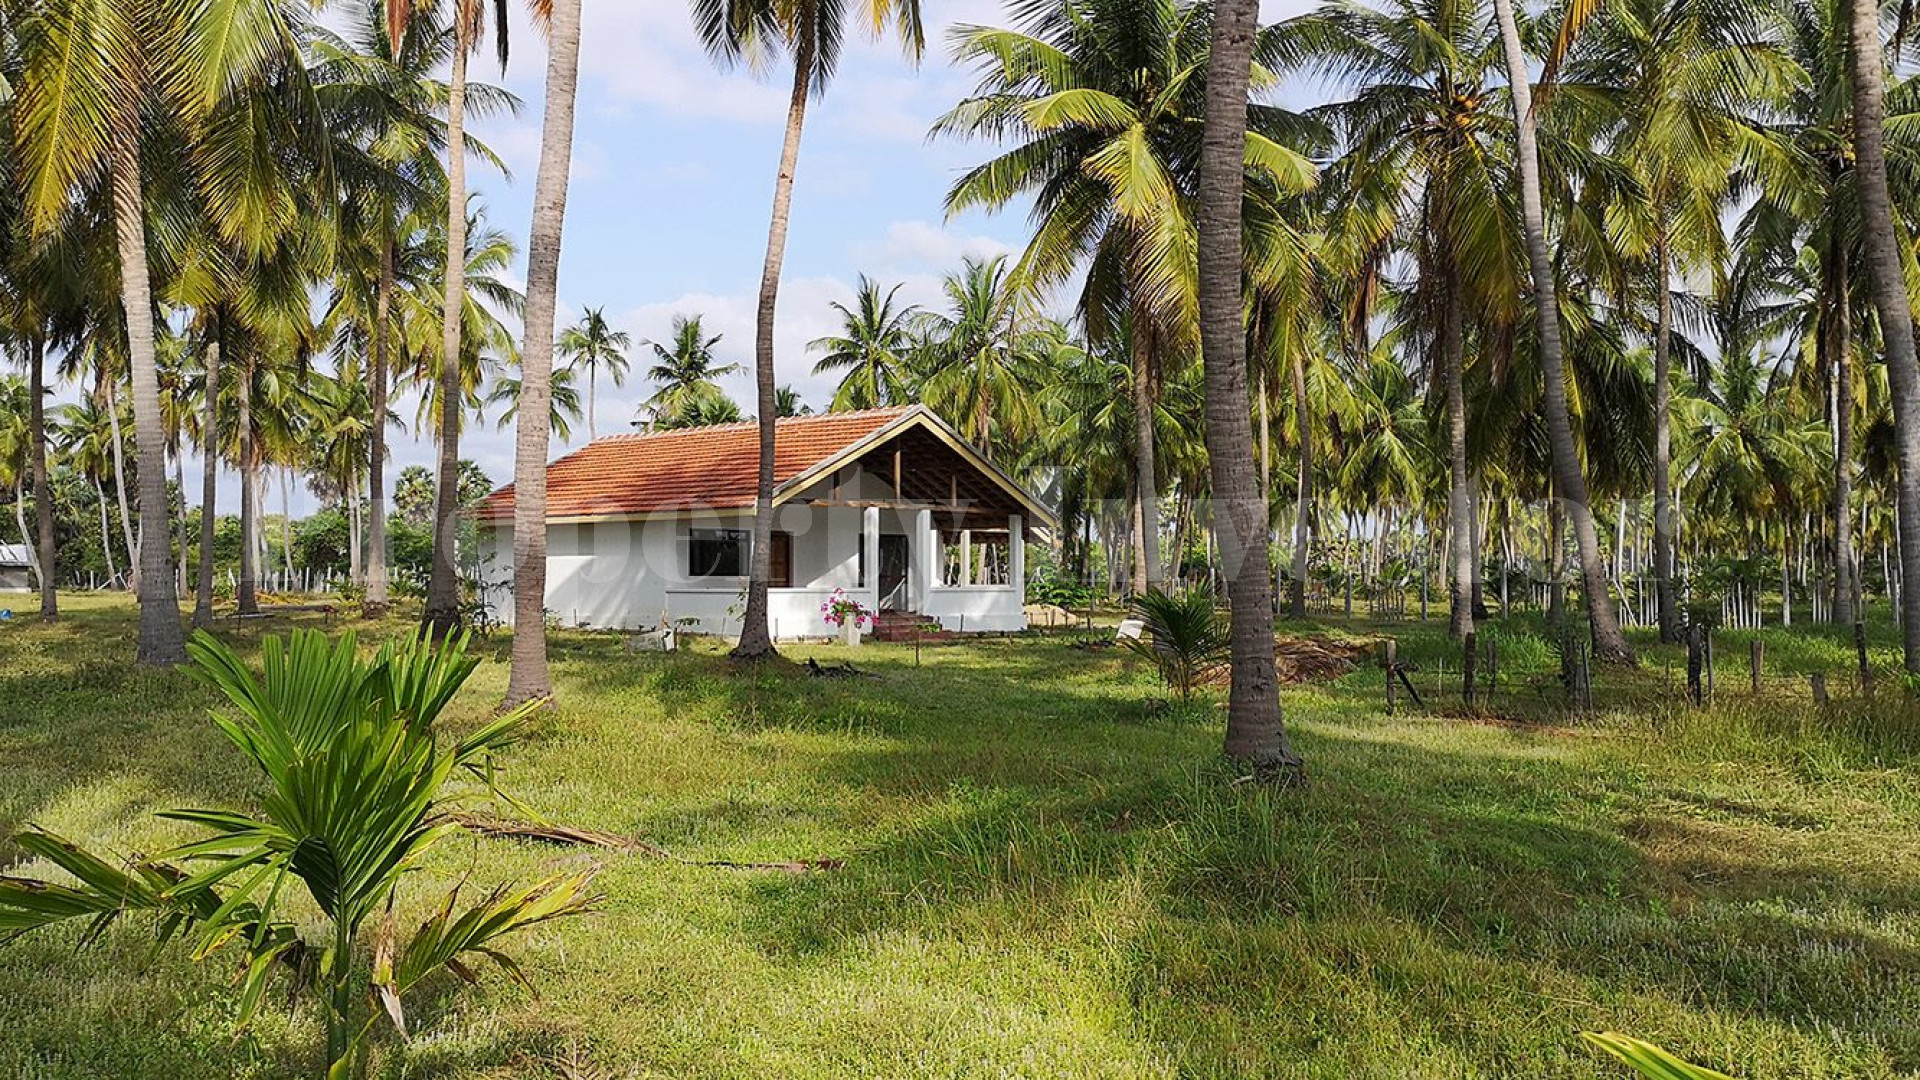 Эксклюзивный участок земли у пляжа площадью 1 гектар на частном полуострове в Шри-Ланке